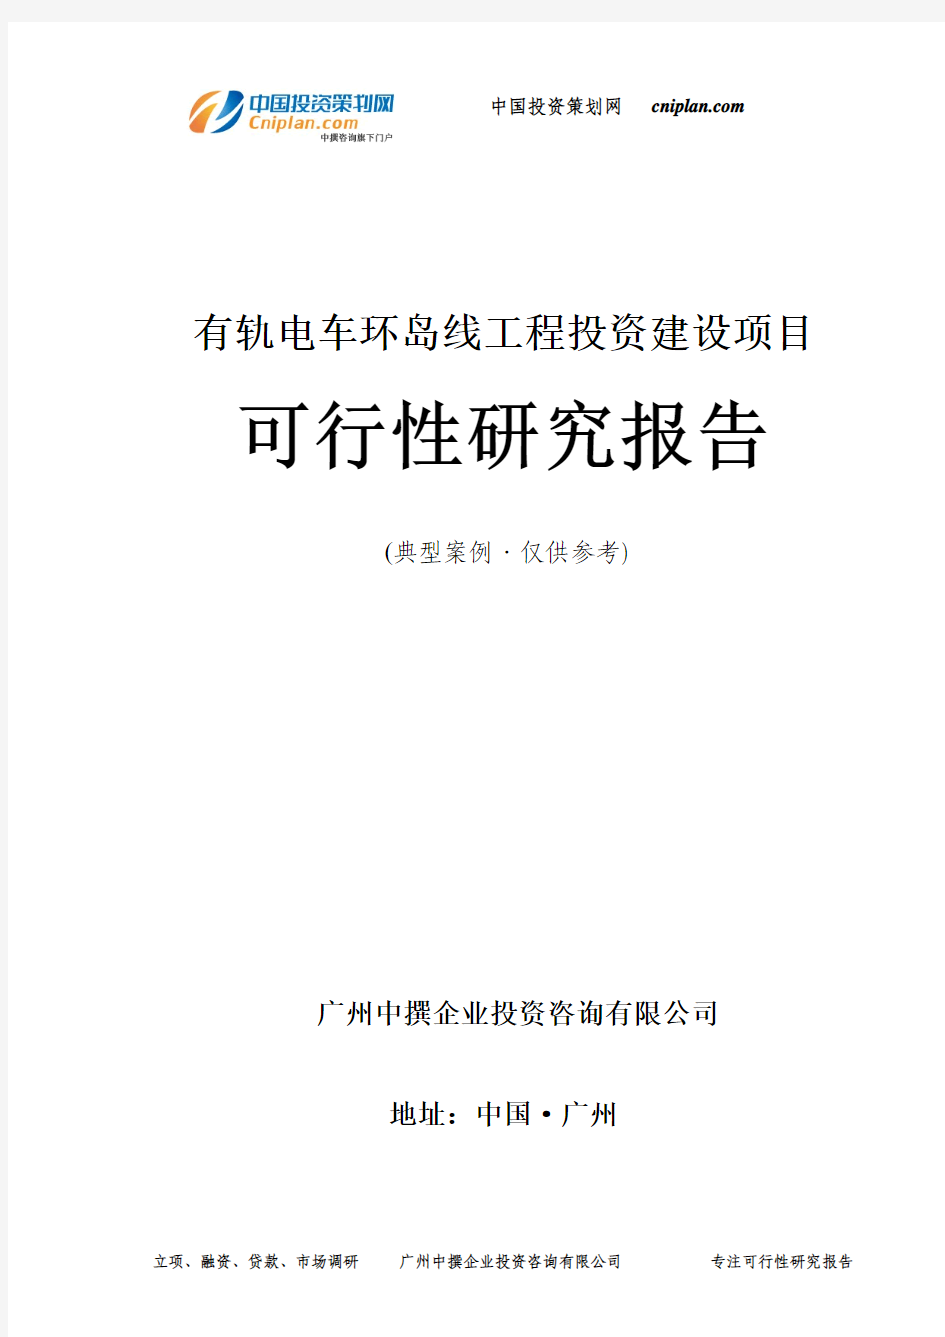 有轨电车环岛线工程投资建设项目可行性研究报告-广州中撰咨询